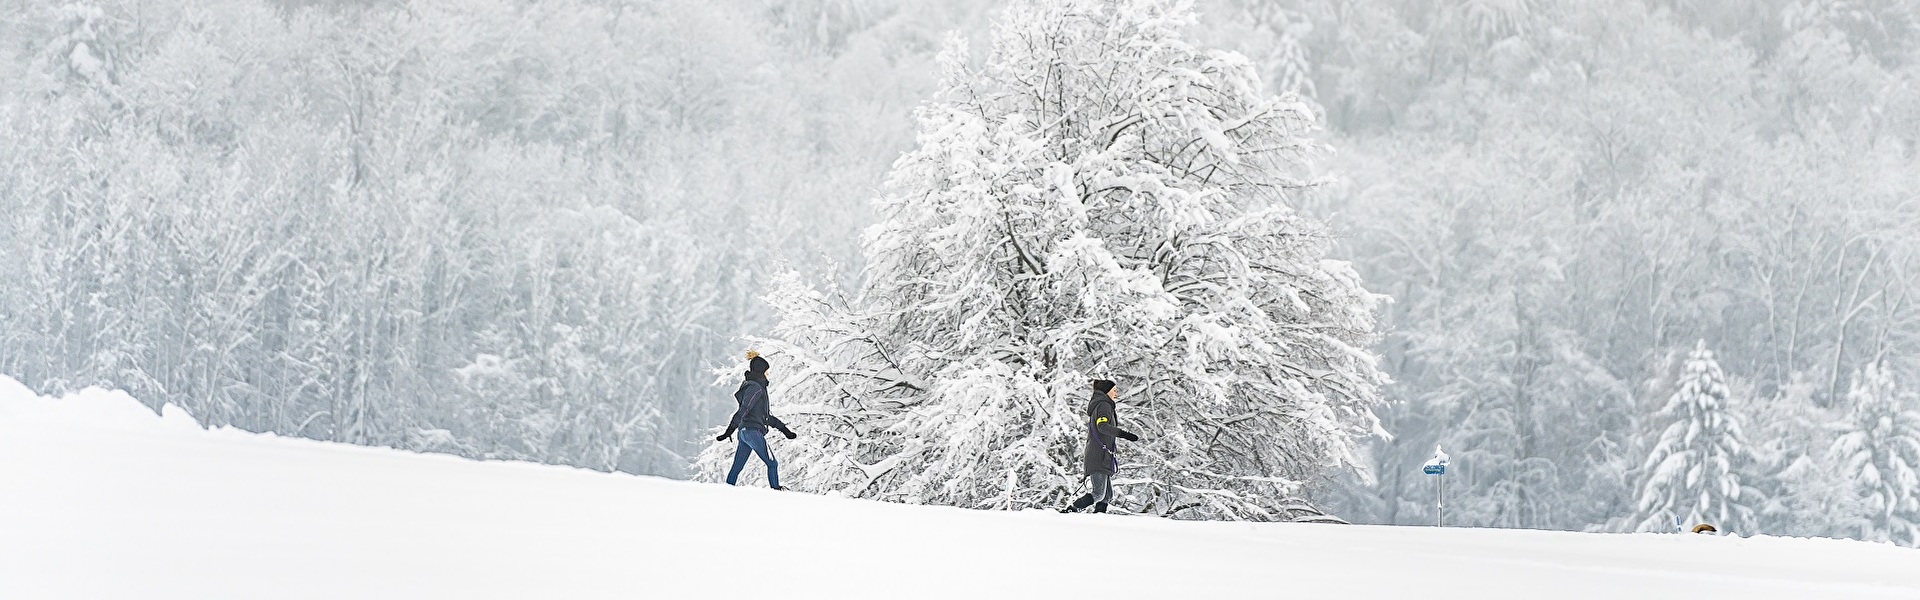 Spaziergänger im Schnee